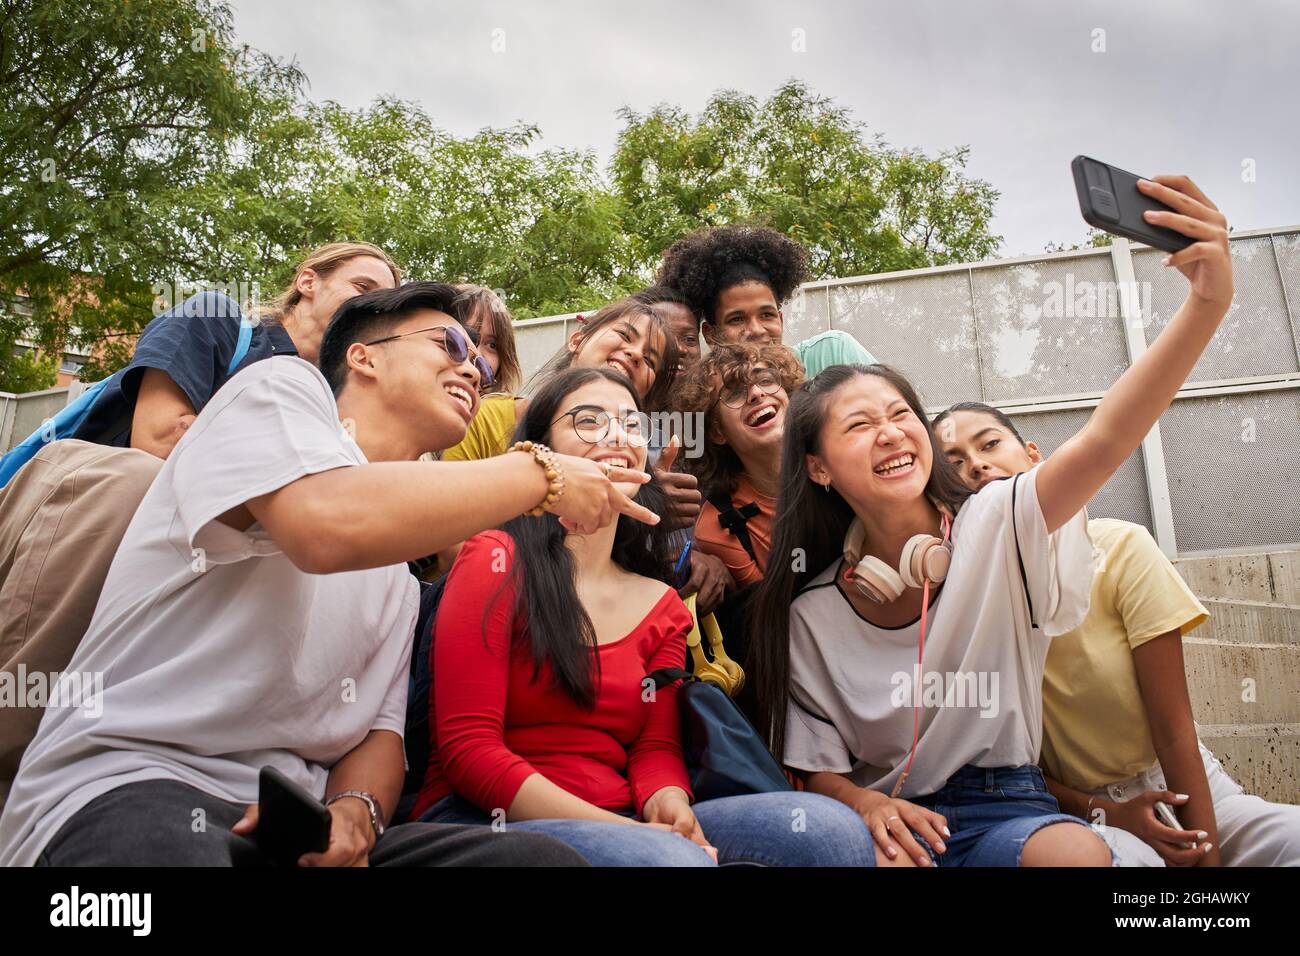 Gruppe von multiethnischen Studenten, die Selfies mit dem Mobiltelefon machen. Jugendliche, die ein Smartphone benutzen und Spaß zusammen haben. Stockfoto